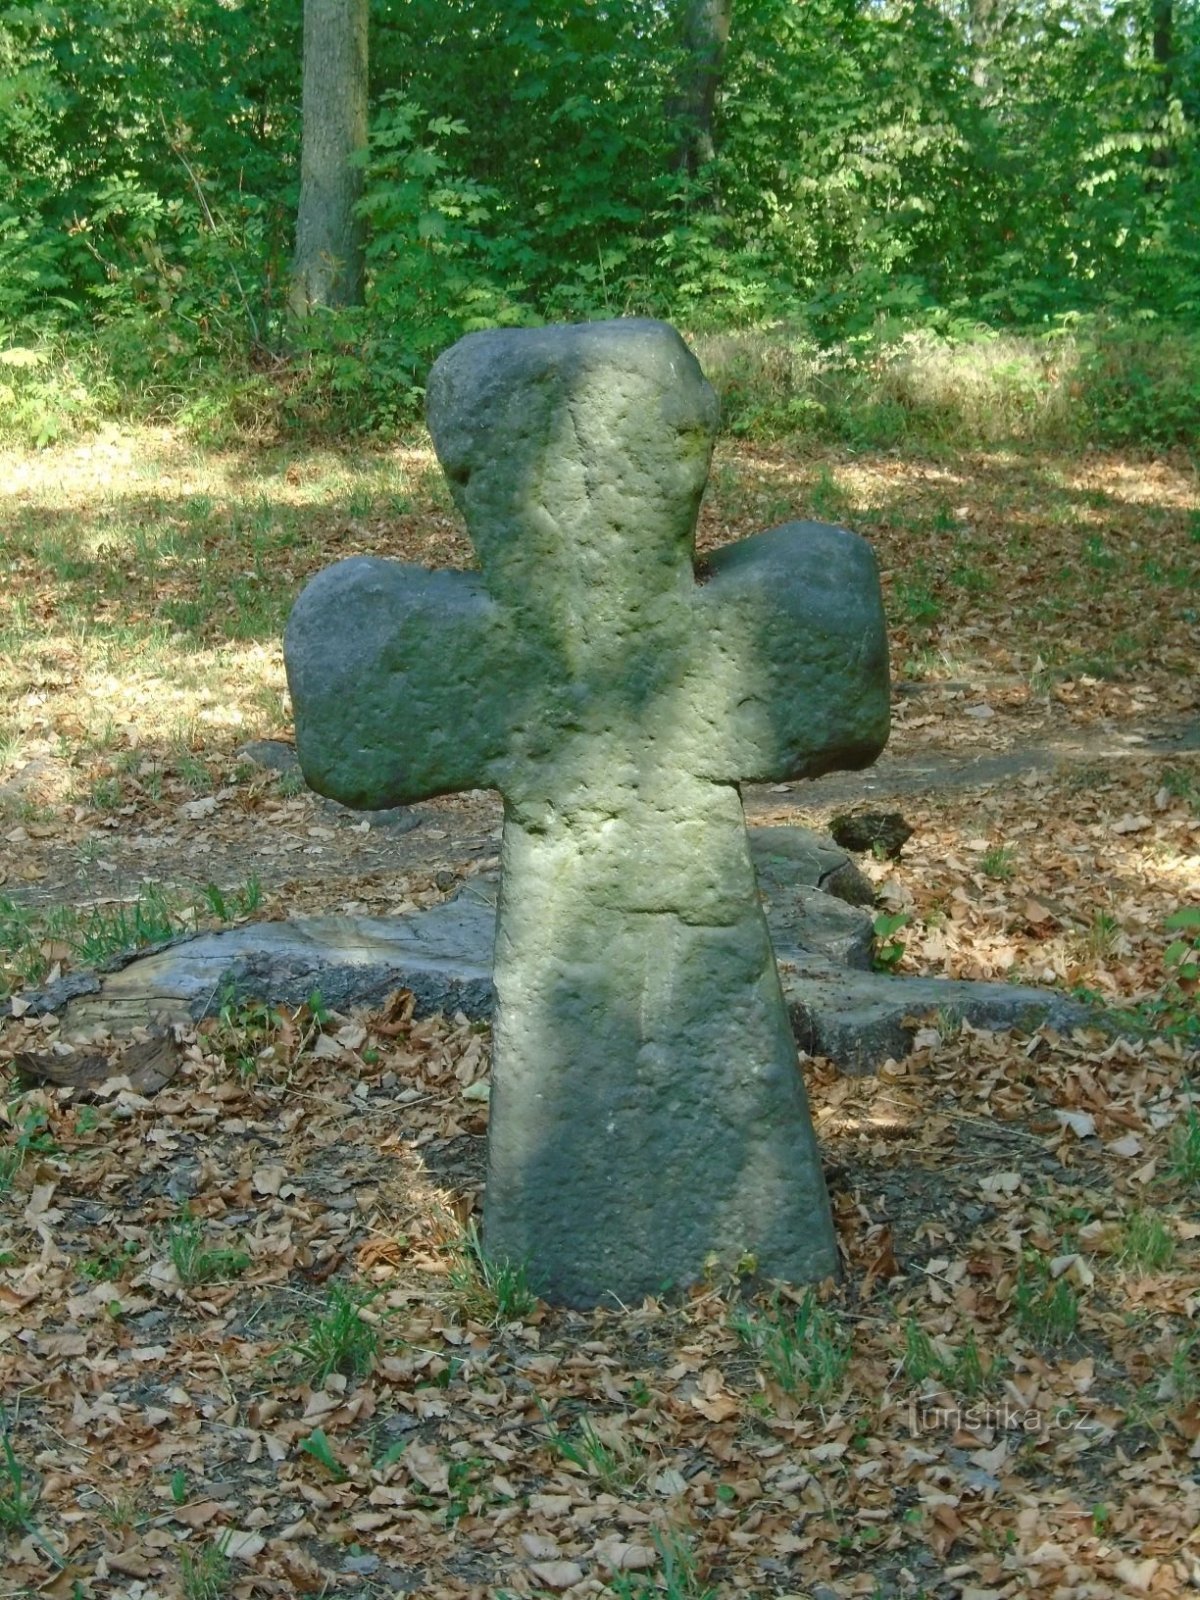 Smírčí či mezní kříž v Masarykových sadech (Josefov, 17.8.2018)